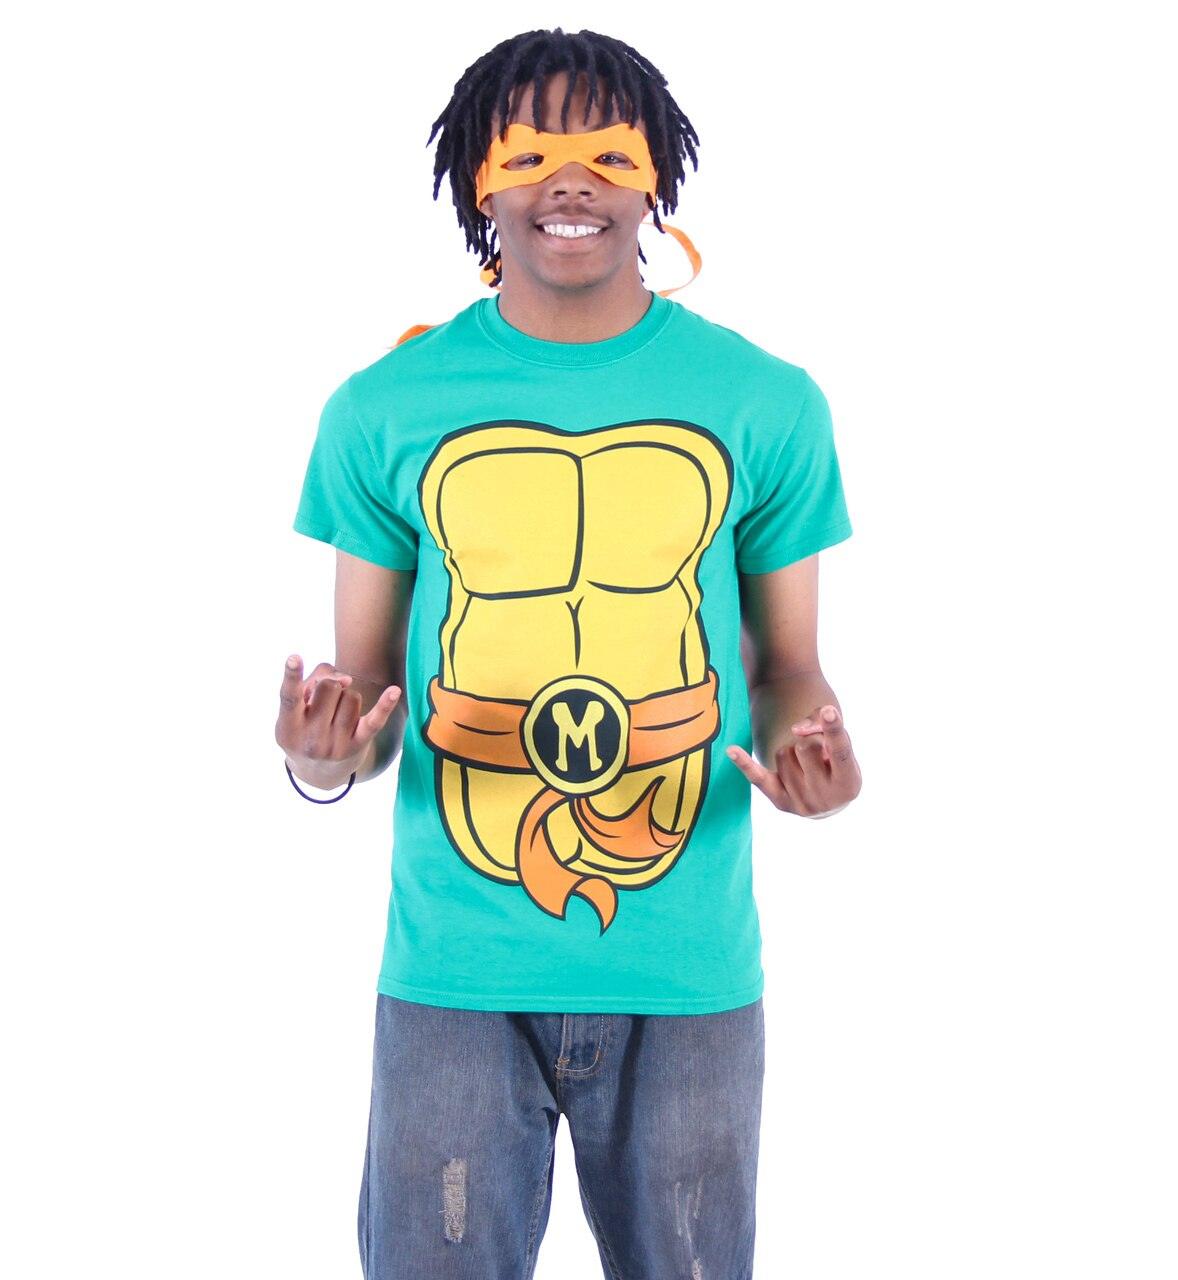 Ninja Turtles T-Shirts for Sale